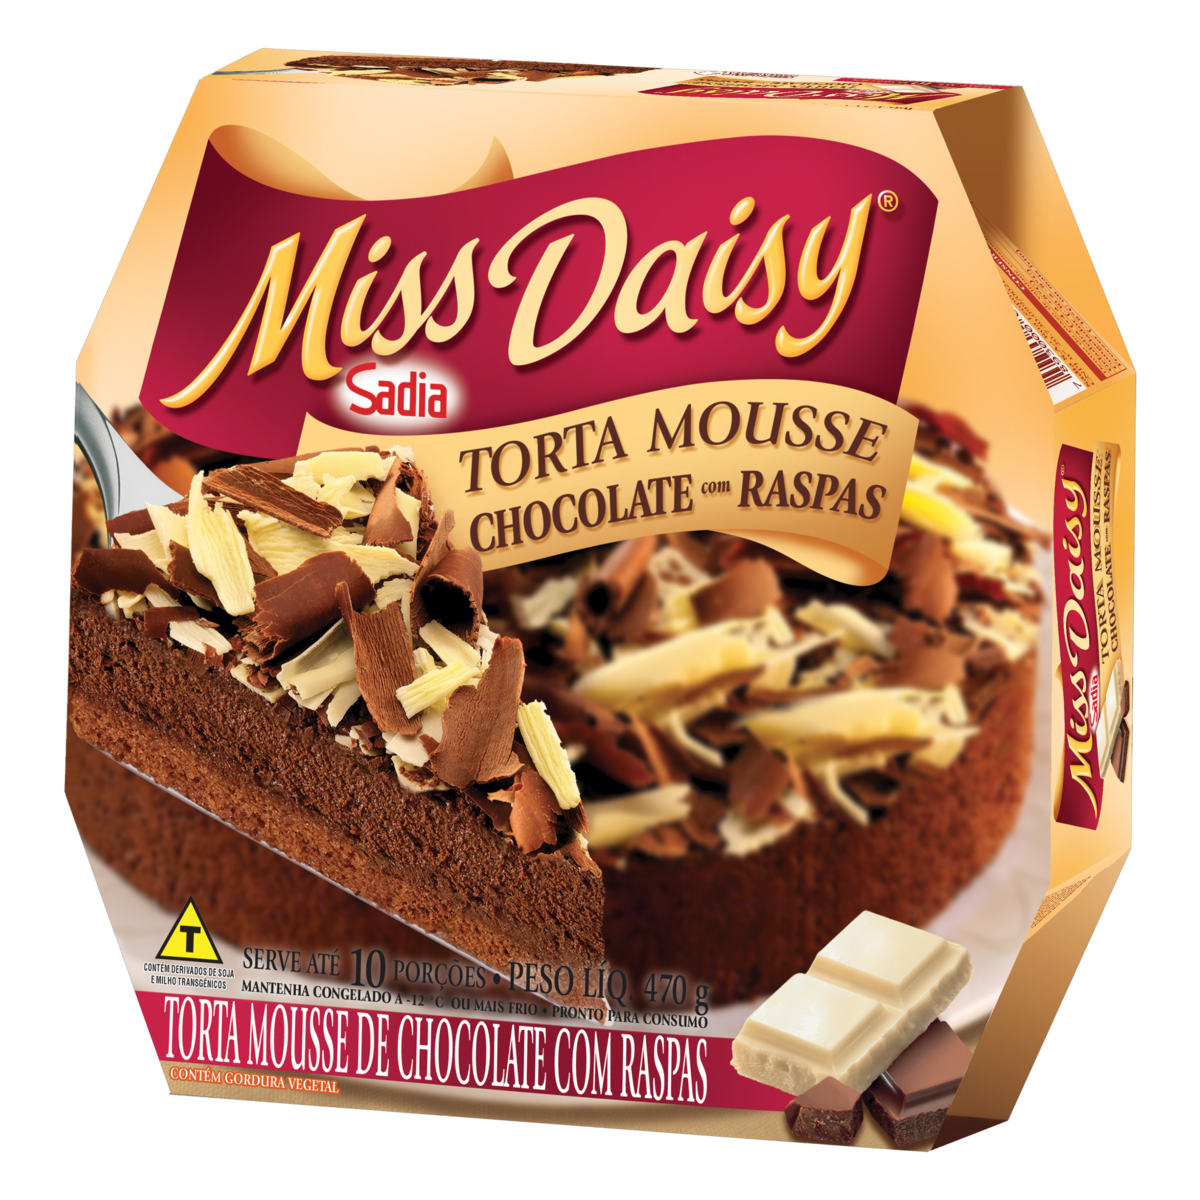 7893000779501 - TORTA MOUSSE DE CHOCOLATE COM RASPAS MISS DAISY CAIXA 470G